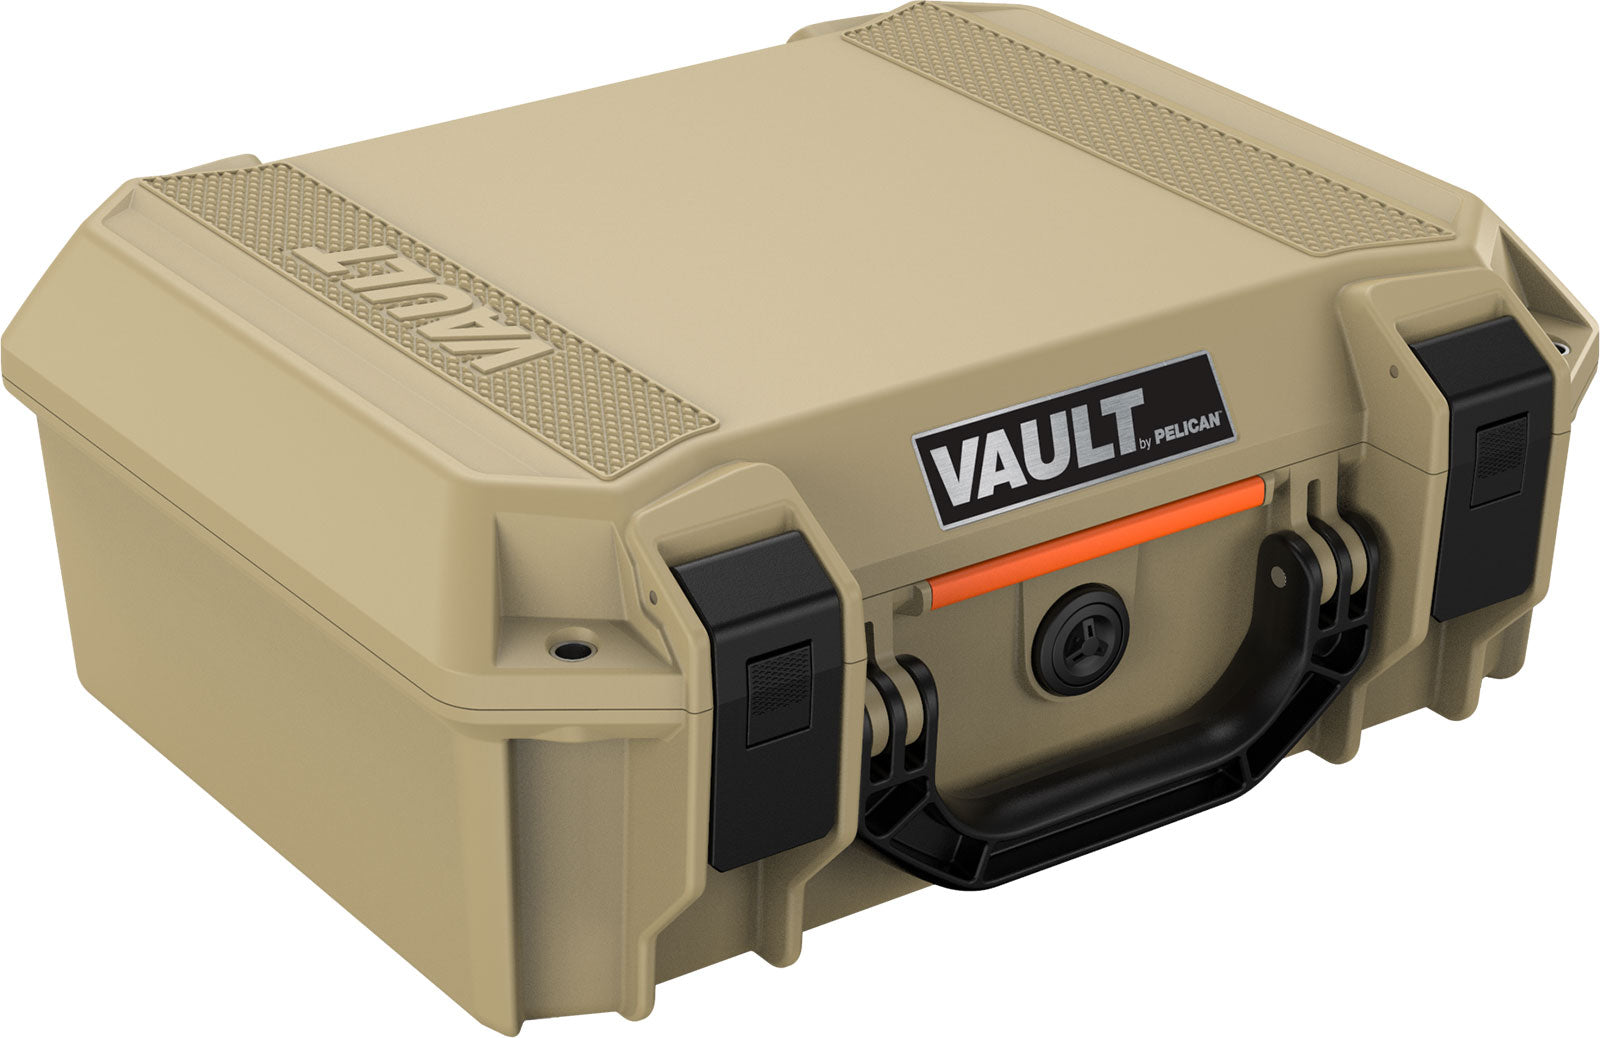 Pelican V200C Vault Medium Equipment Case w/ Foam Insert